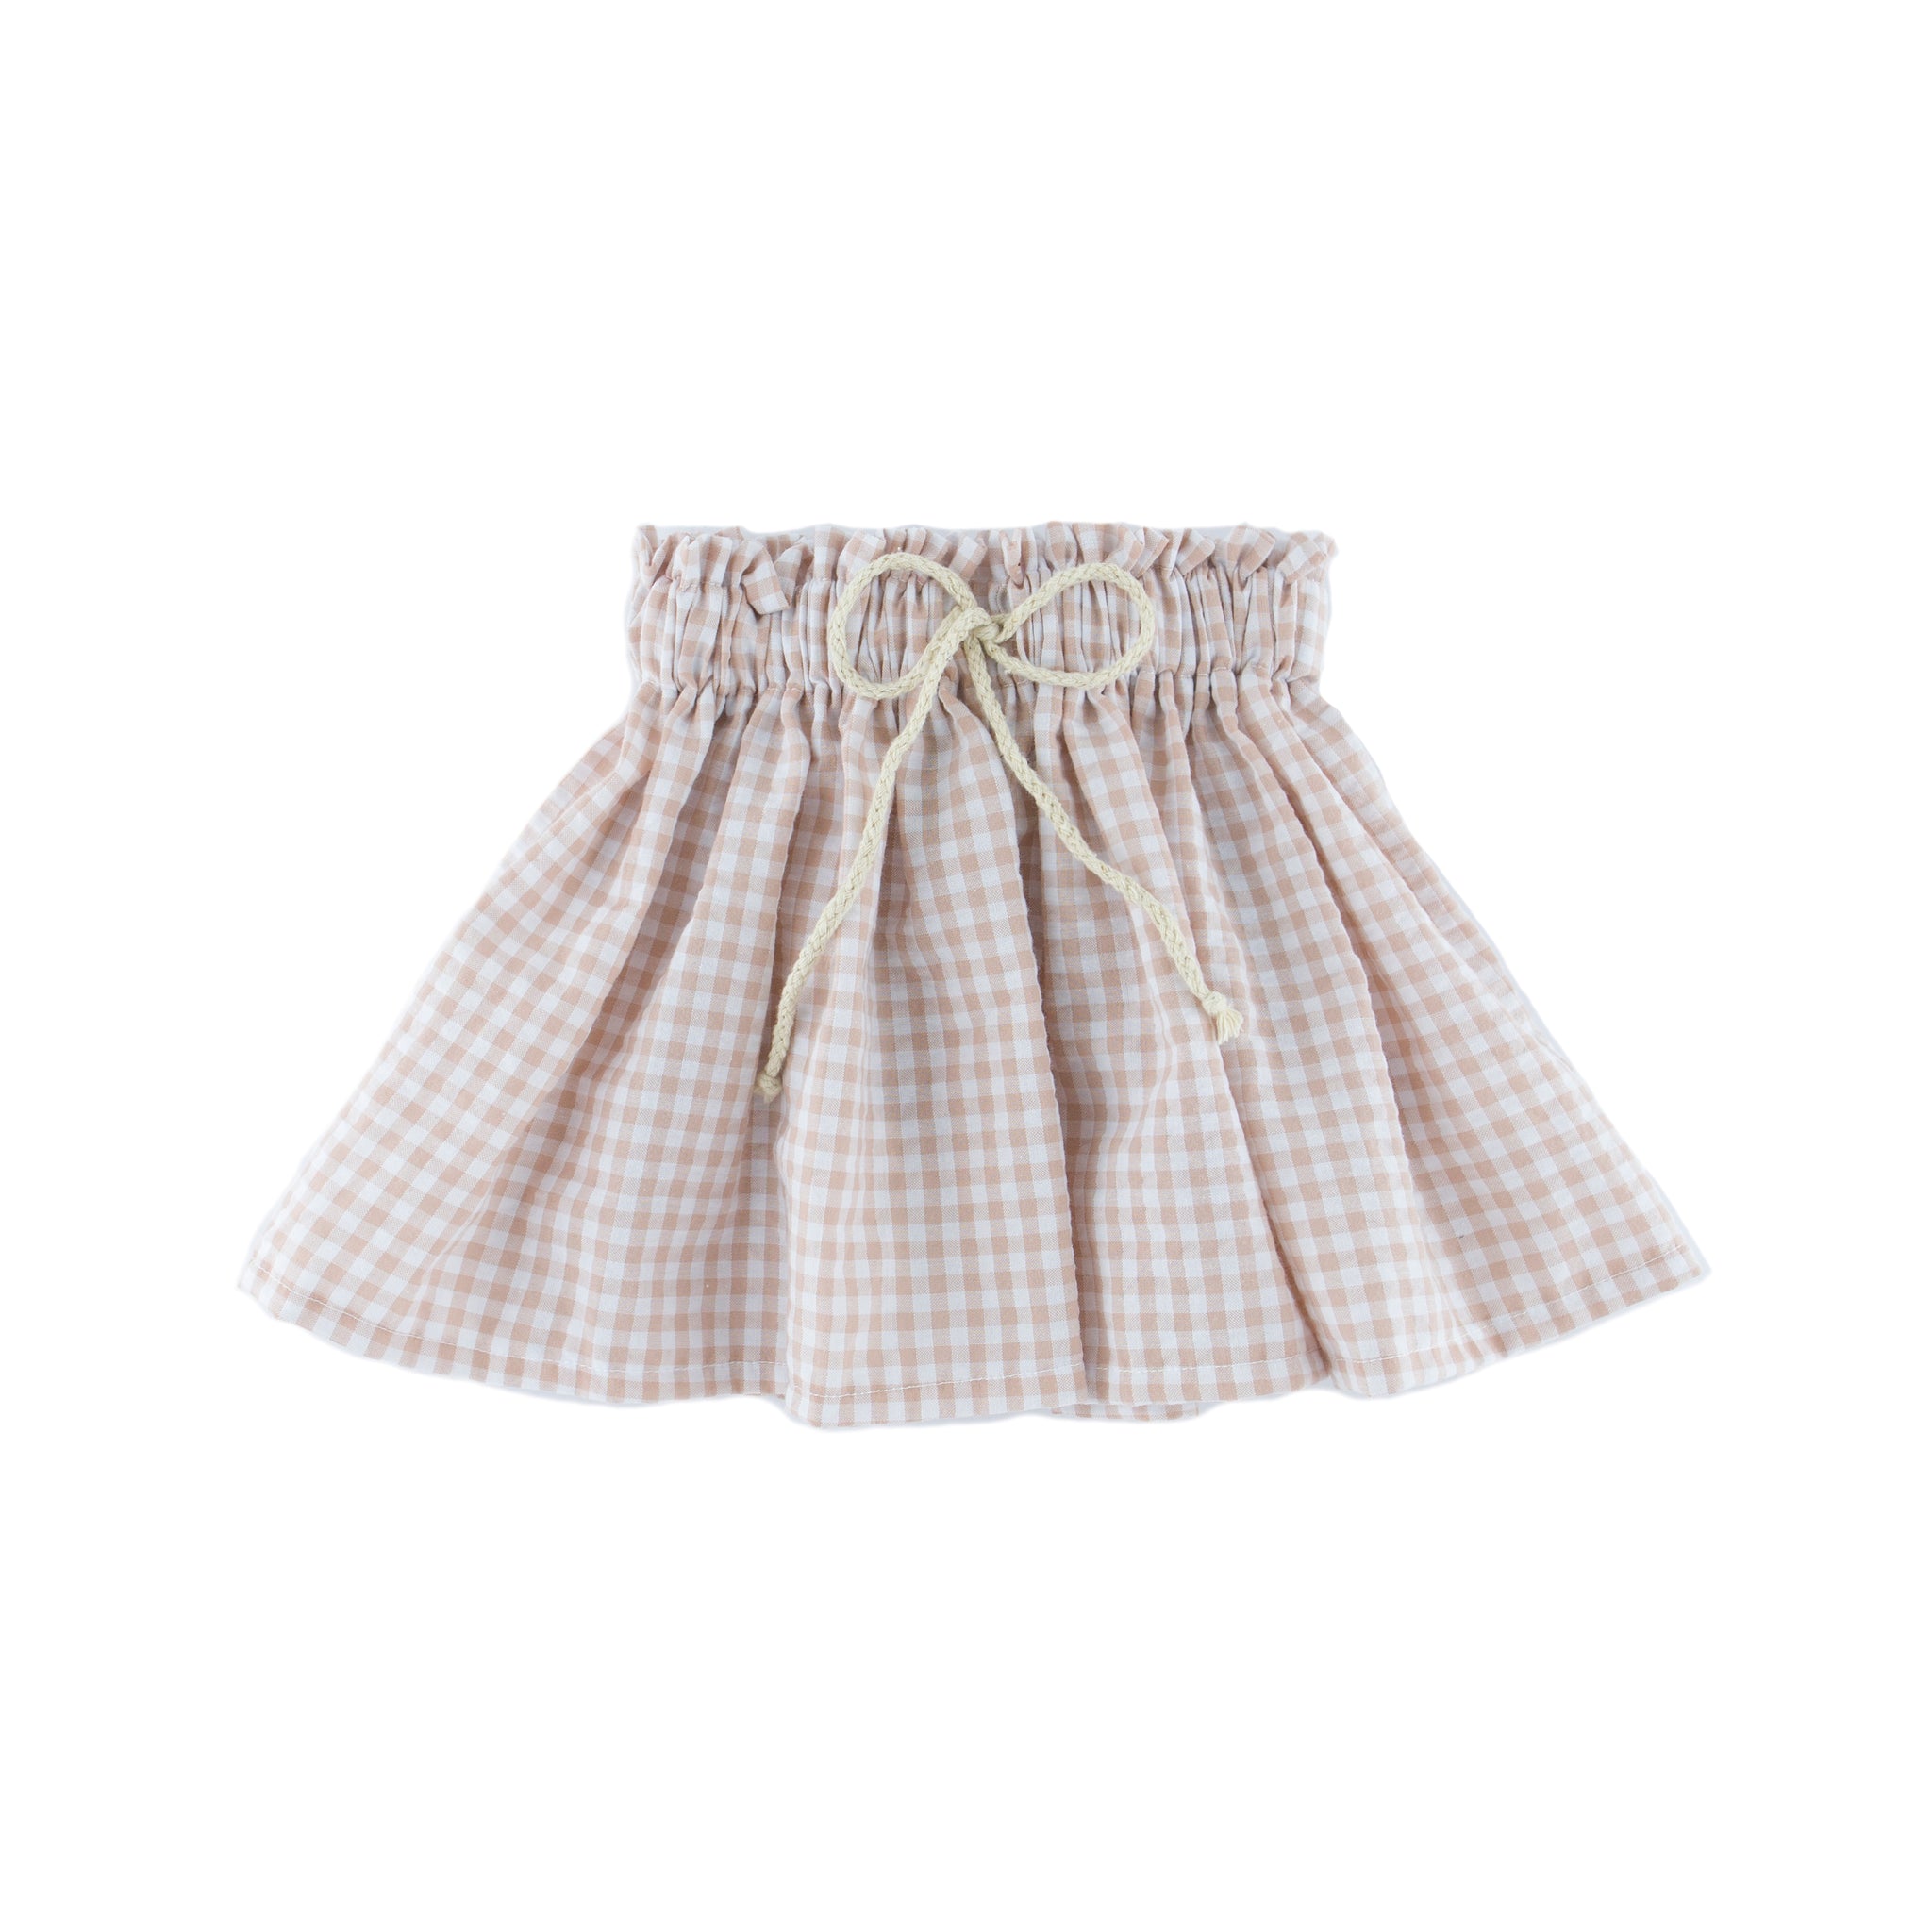 Girl's Sienna Skirt - Checkered Soft Pink - 1-8 years - Seersucker Polycotton